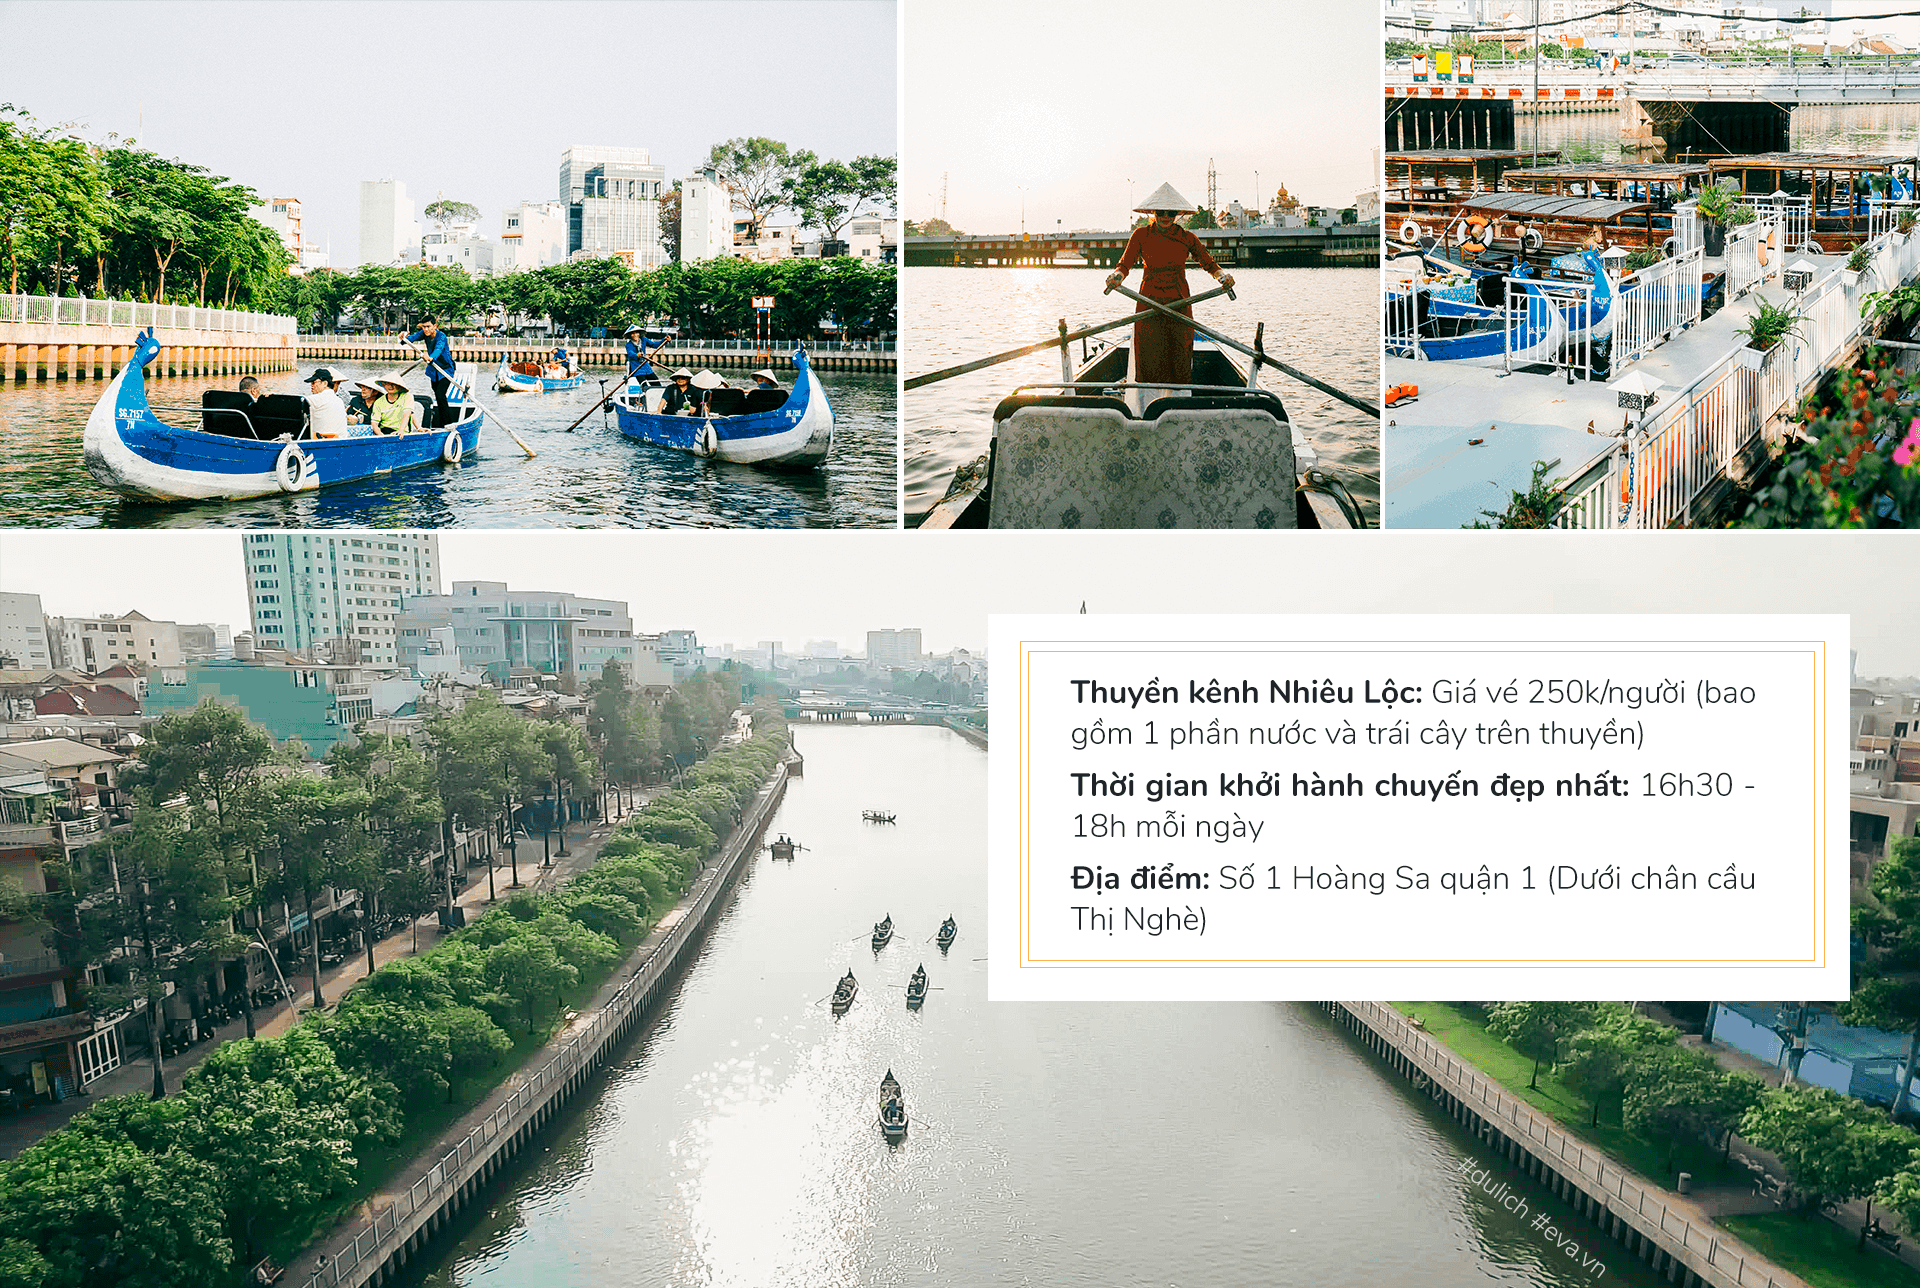 Hành trình du lịch Sài Gòn độc nhất cho kỳ nghỉ dài - 20